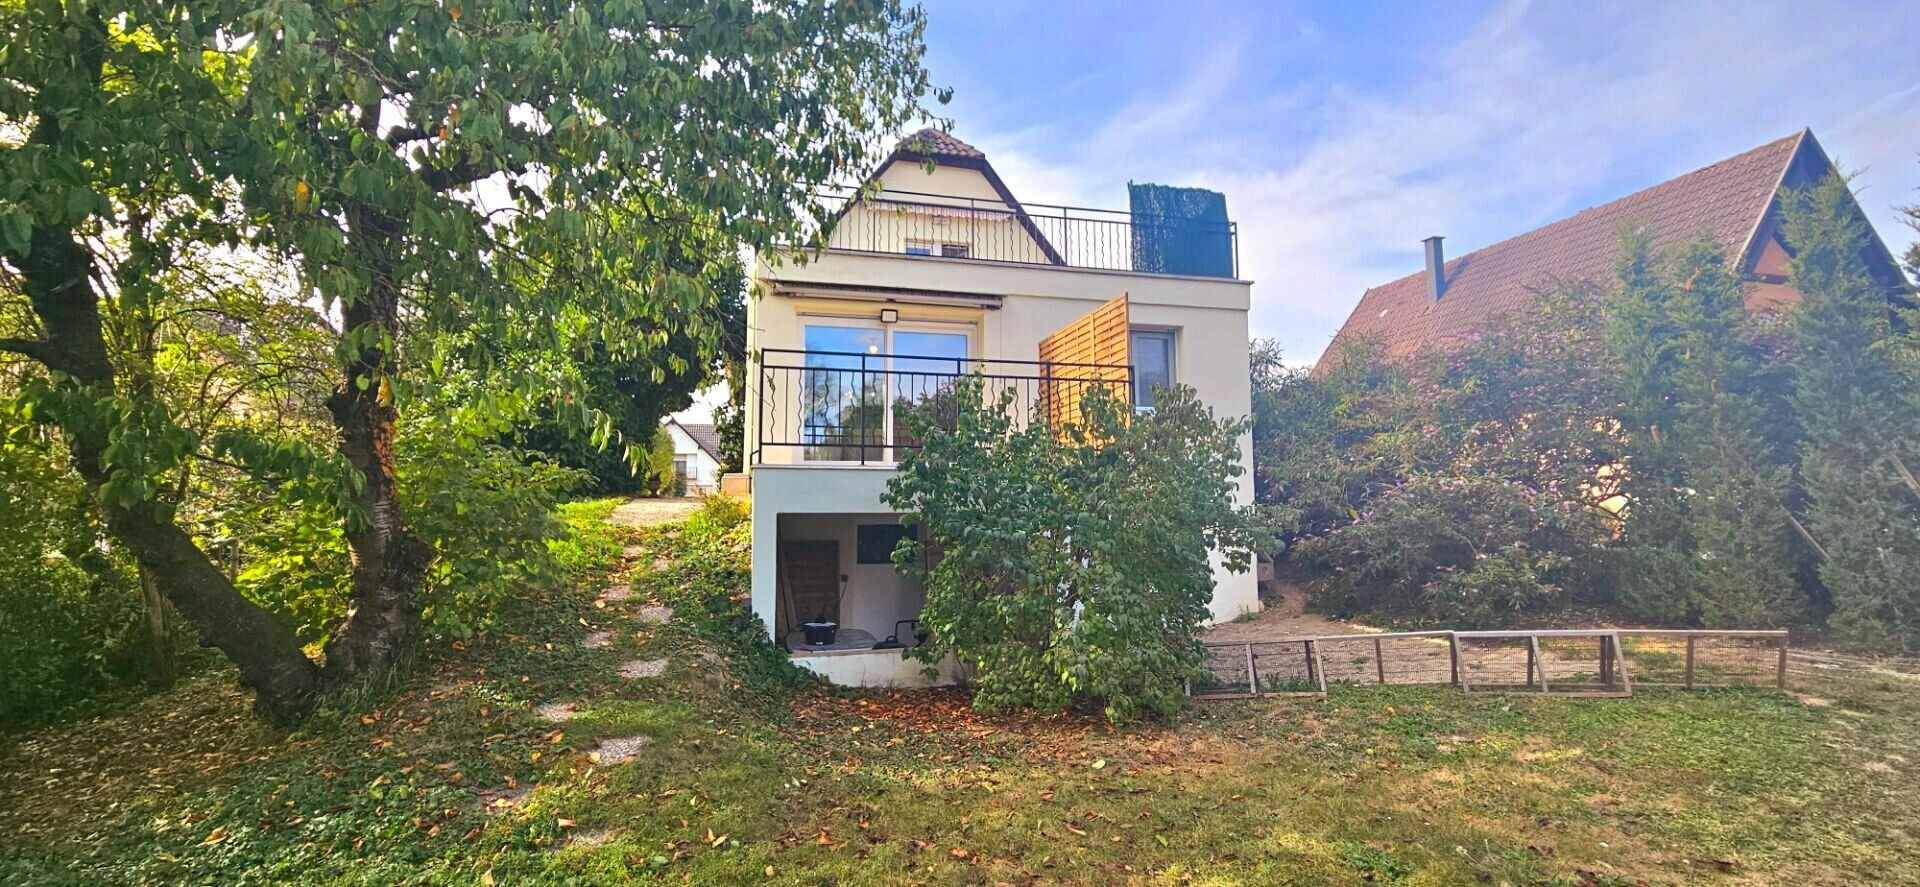 Maison à vendre 6 165m2 à Strasbourg vignette-1